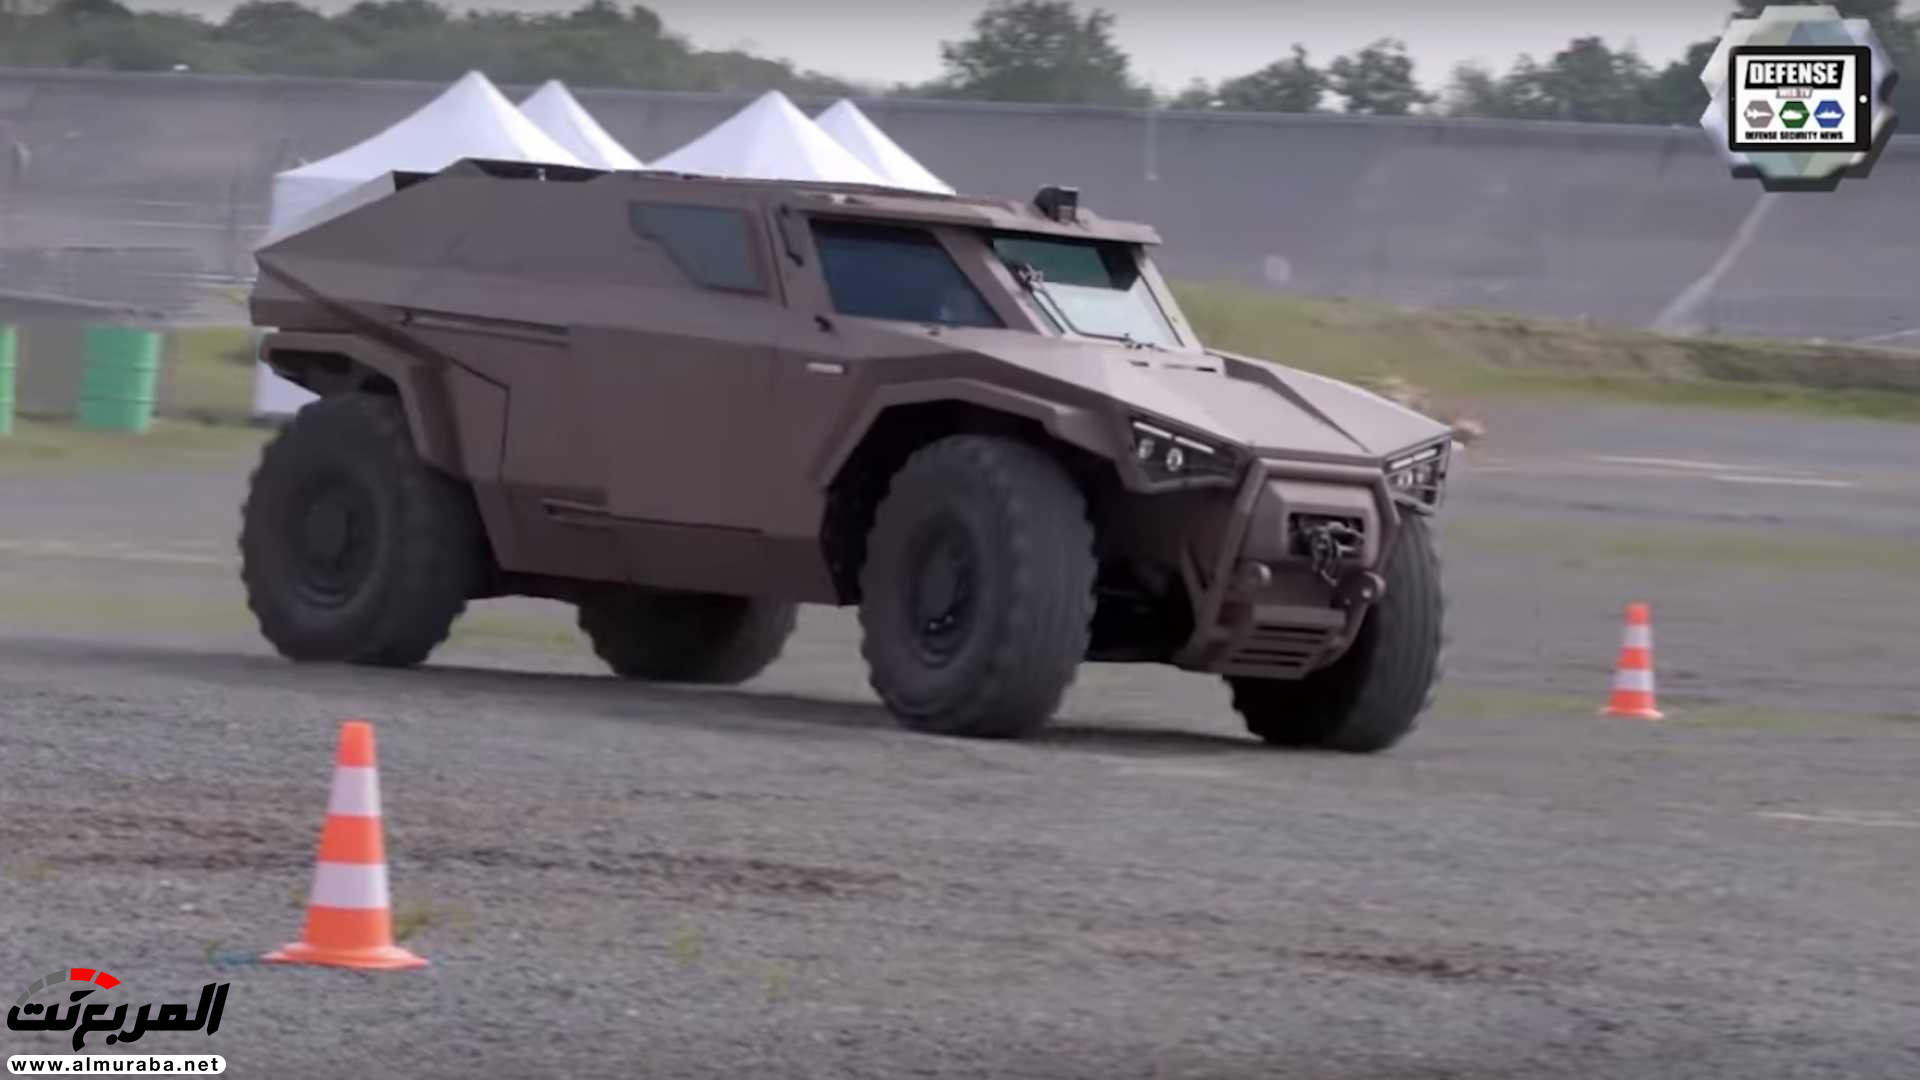 "بالفيديو والصور" فولفو صنعت سيارة عسكرية تنافس همر 21